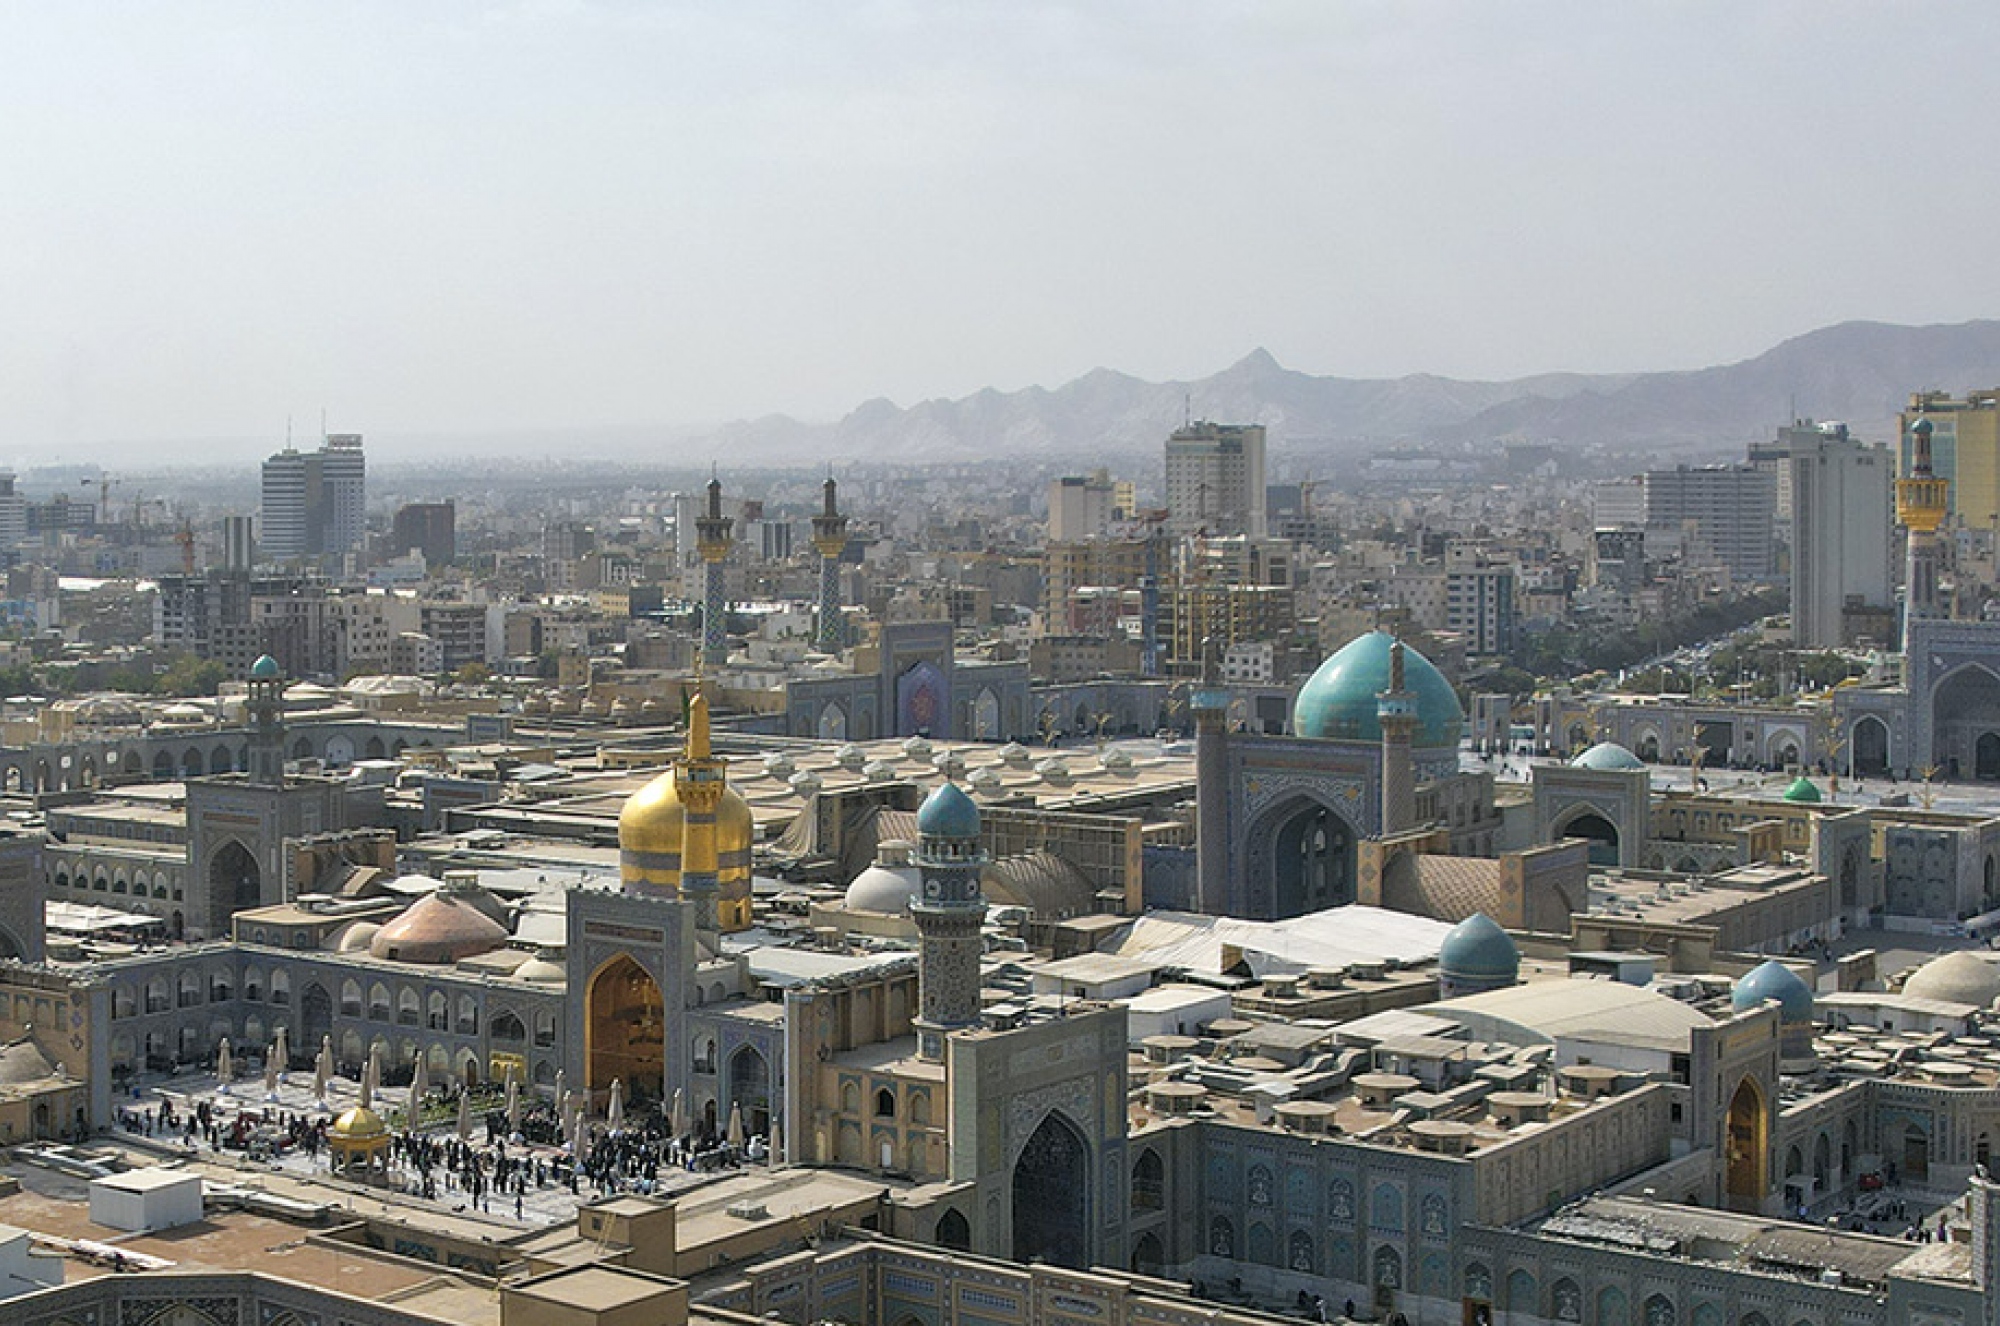 عکس با کیفیت : تصویر هوایی از حرم امام رضا علیه السلام